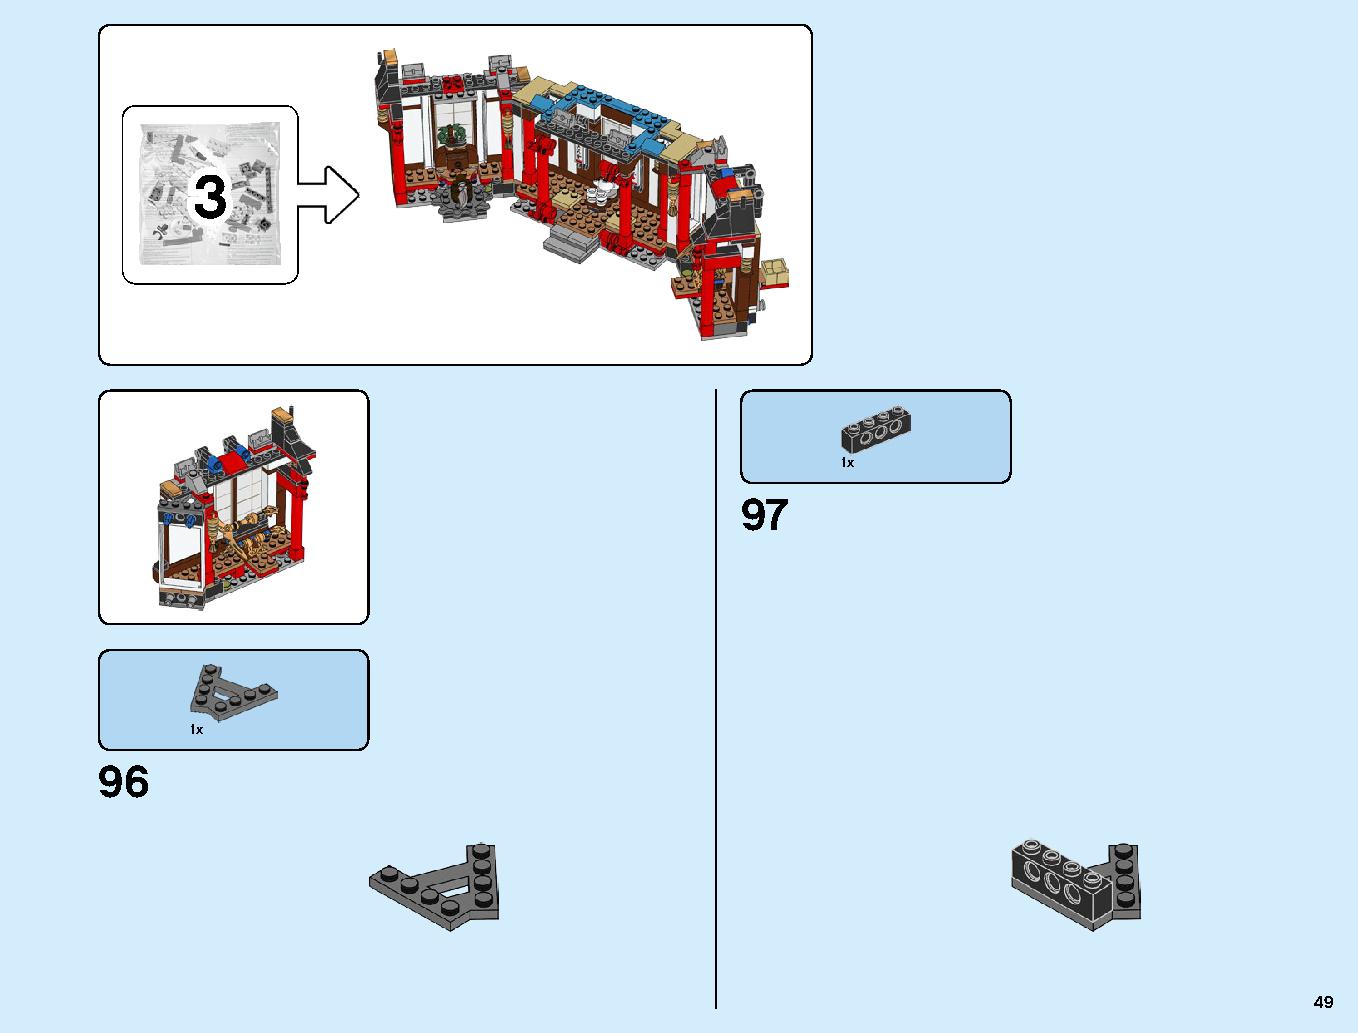 ニンジャ道場 70670 レゴの商品情報 レゴの説明書・組立方法 49 page